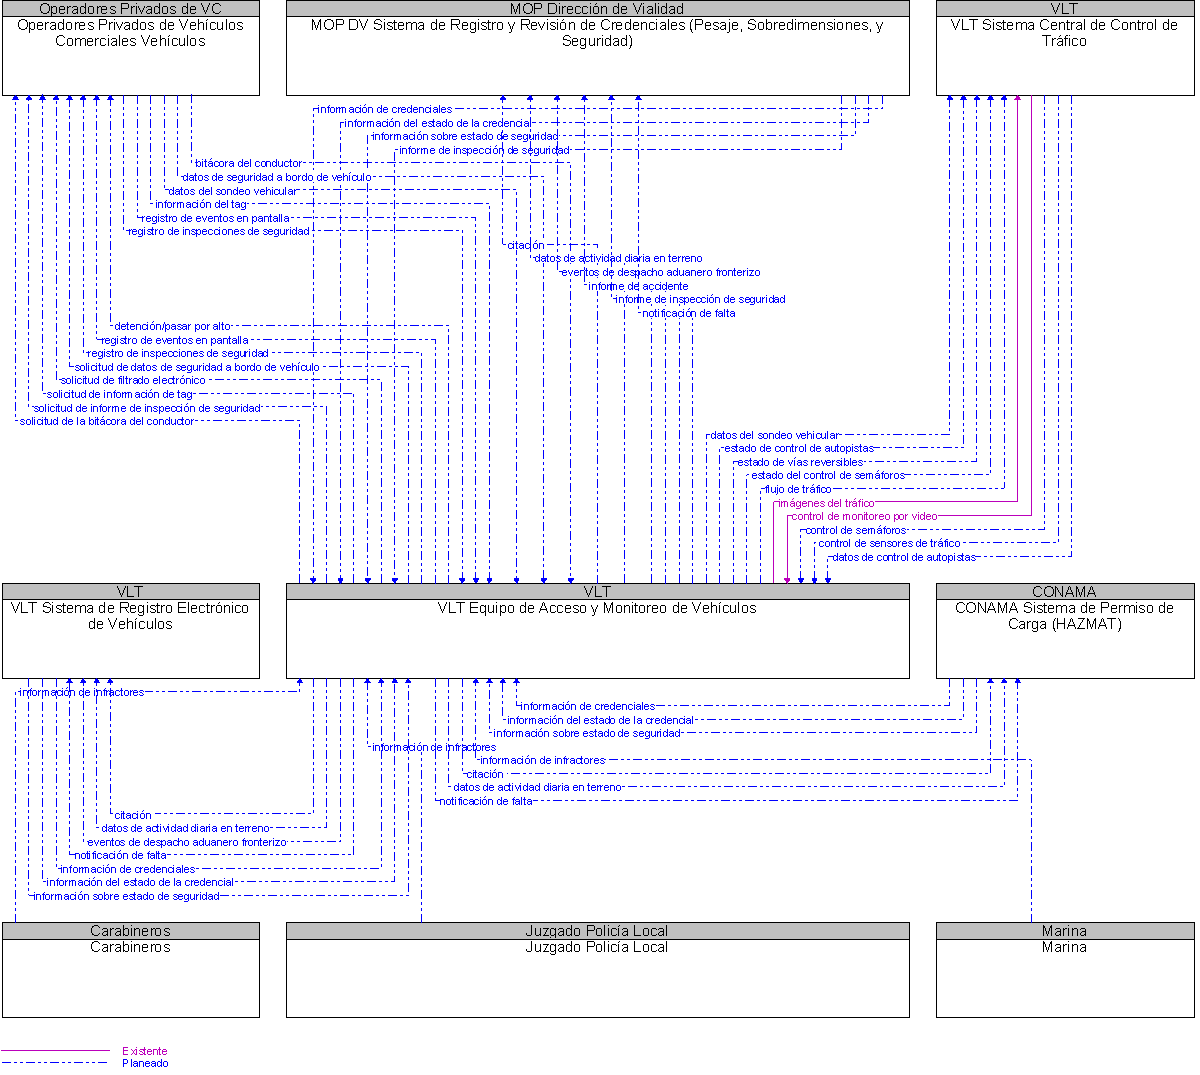 Diagrama Del Contexto por VLT Equipo de Acceso y Monitoreo de Vehculos